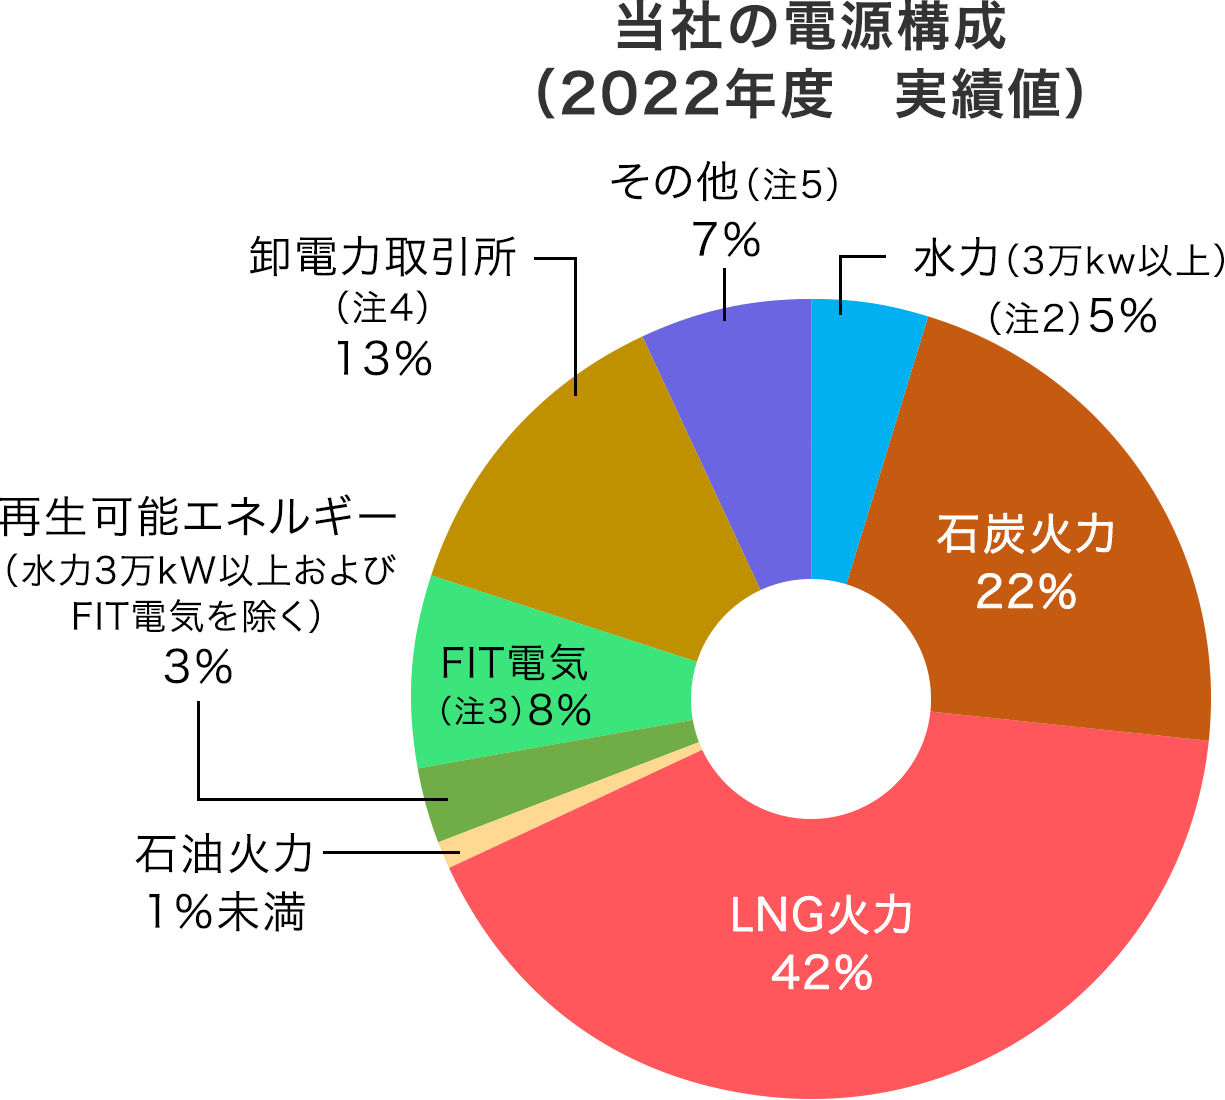 当社の電源構成（2021年度　実績値）　水力5%、石炭火力21%、LNG火力42%、石油火力1%、再生可能エネルギー3%、FIT電気8%、卸電力取引所14%、その他7%